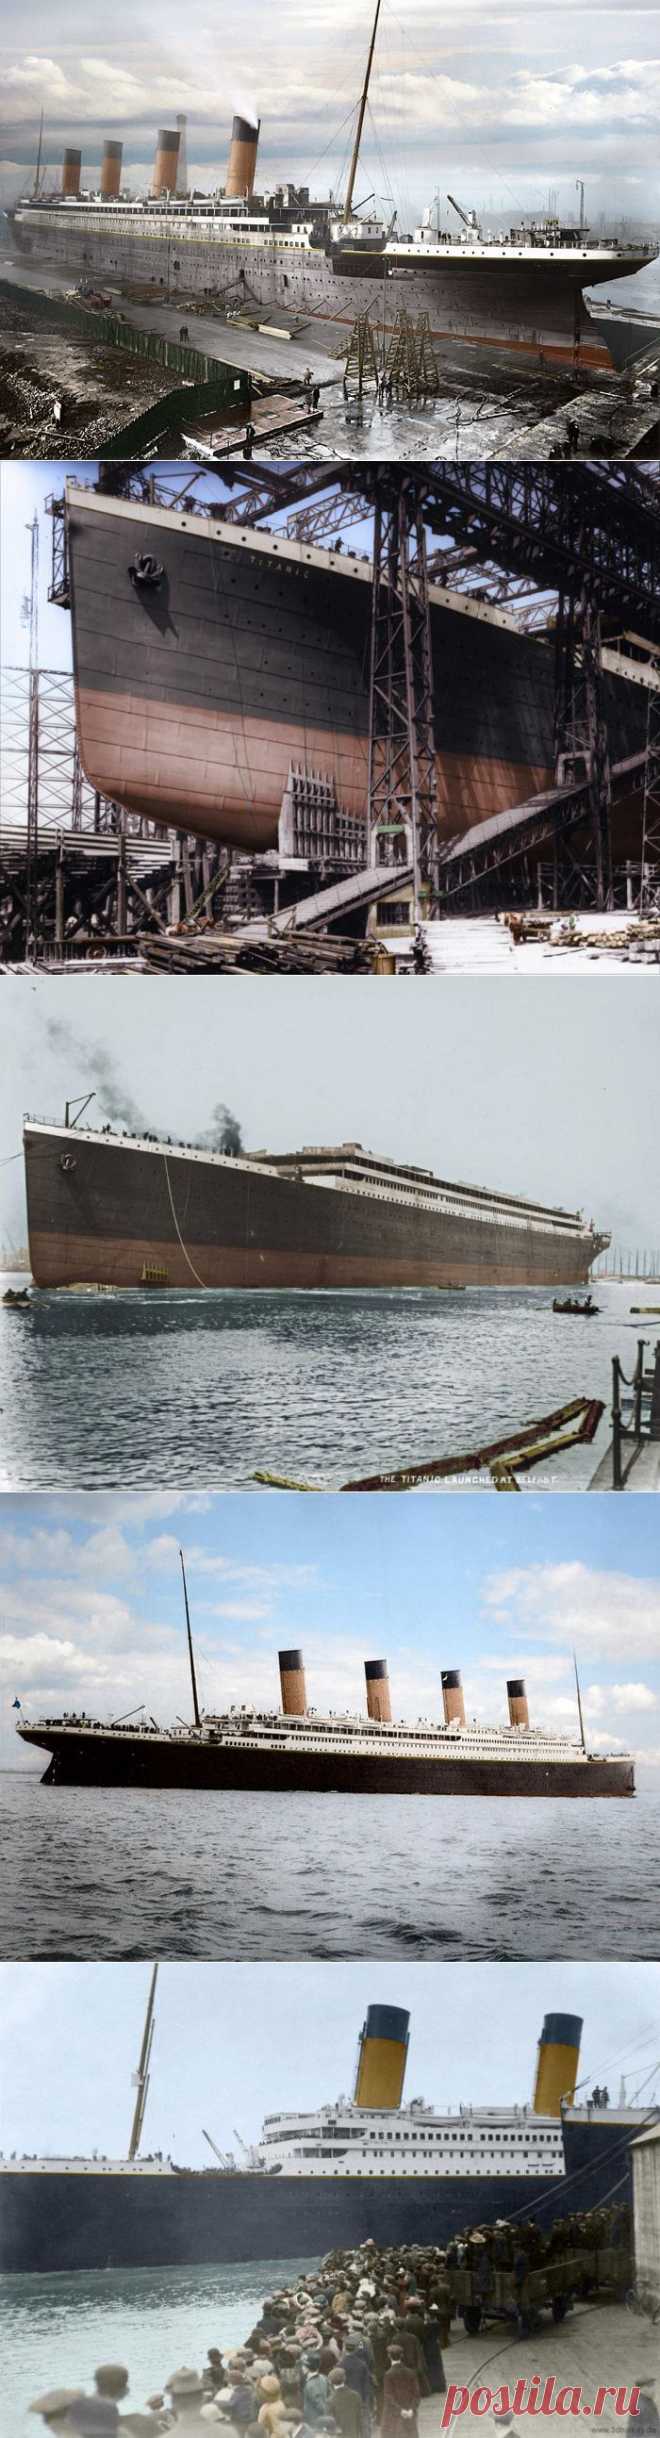 "Титаник" в цвете
остальные фото тут http://feldgrau.info/index.php/2010-09-02-14-48-28/8777-291213